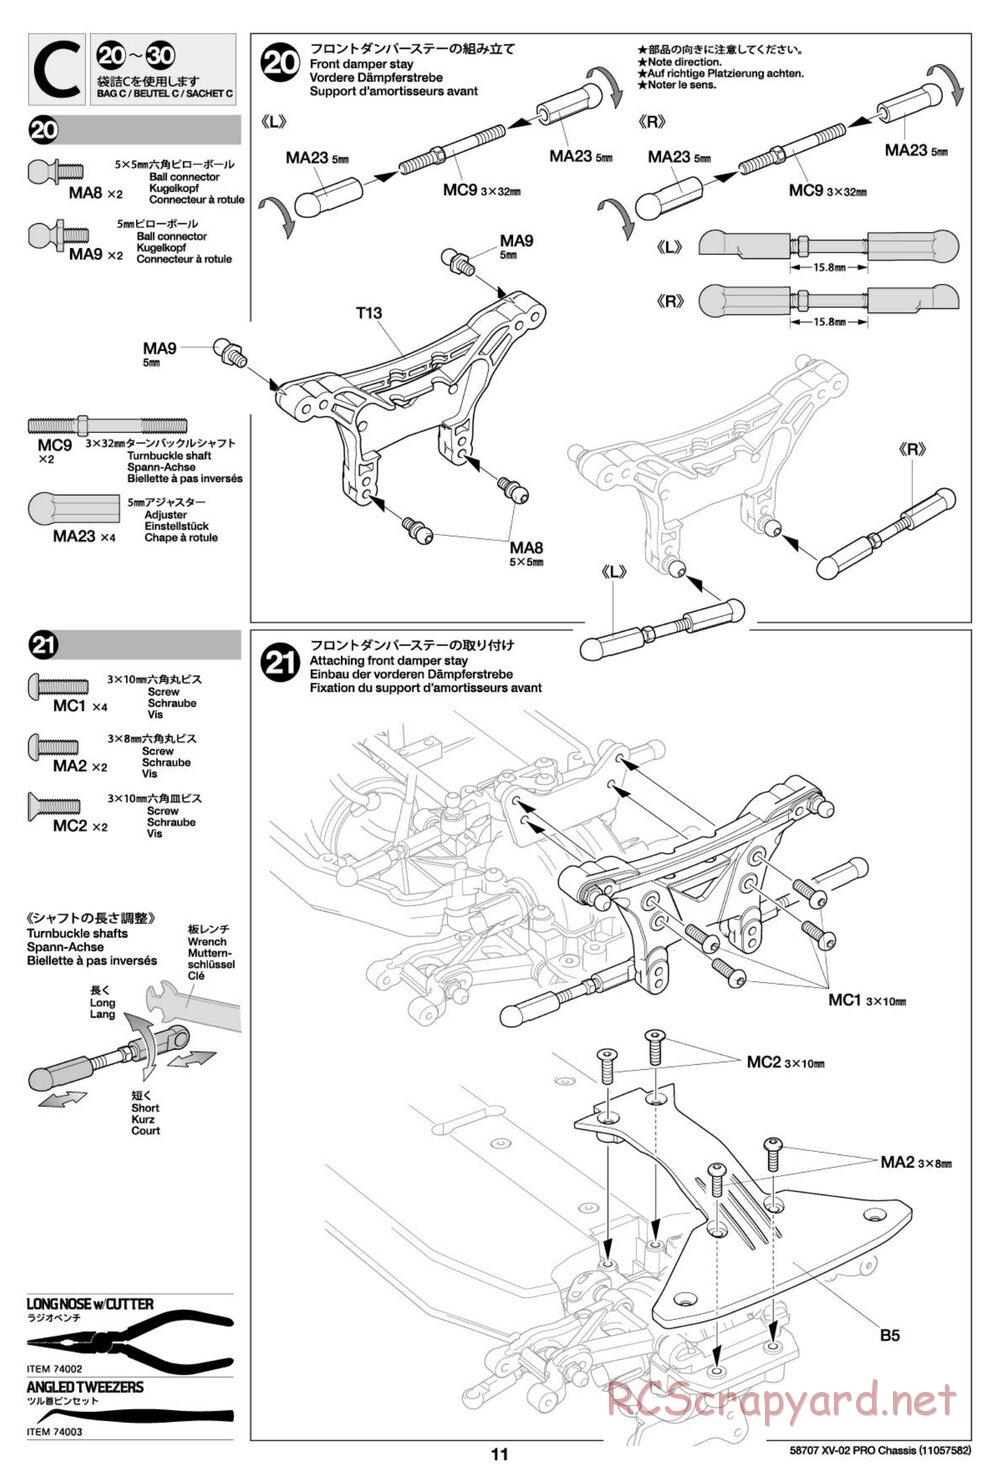 Tamiya - XV-02 Pro Chassis - Manual - Page 11